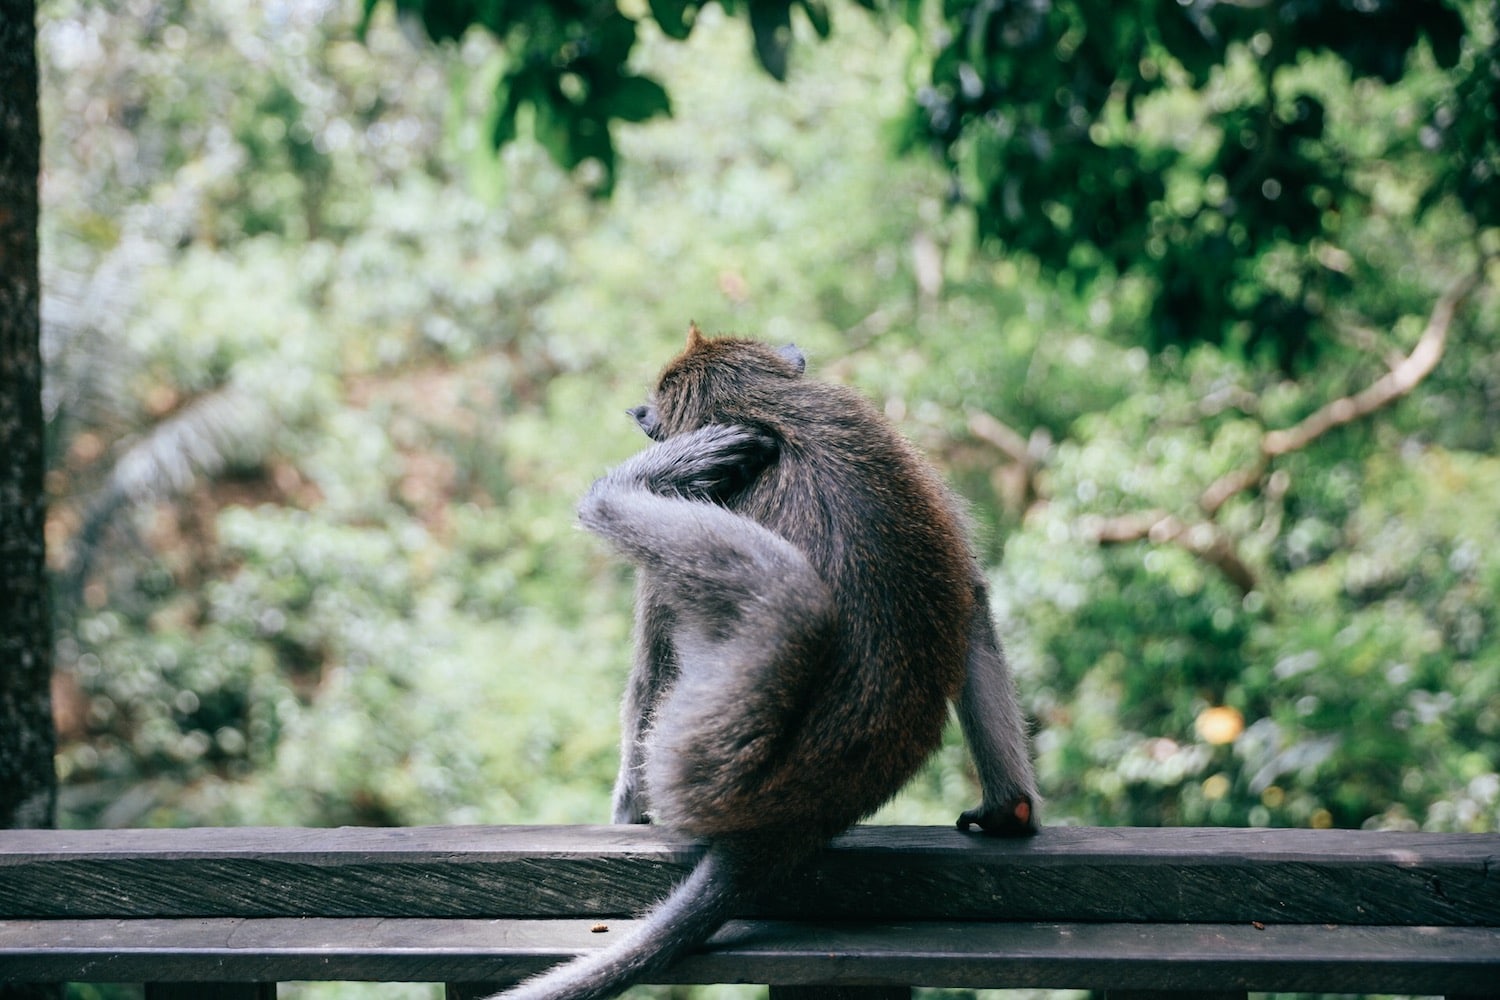 Ubud Bali Monkey Sanctuary